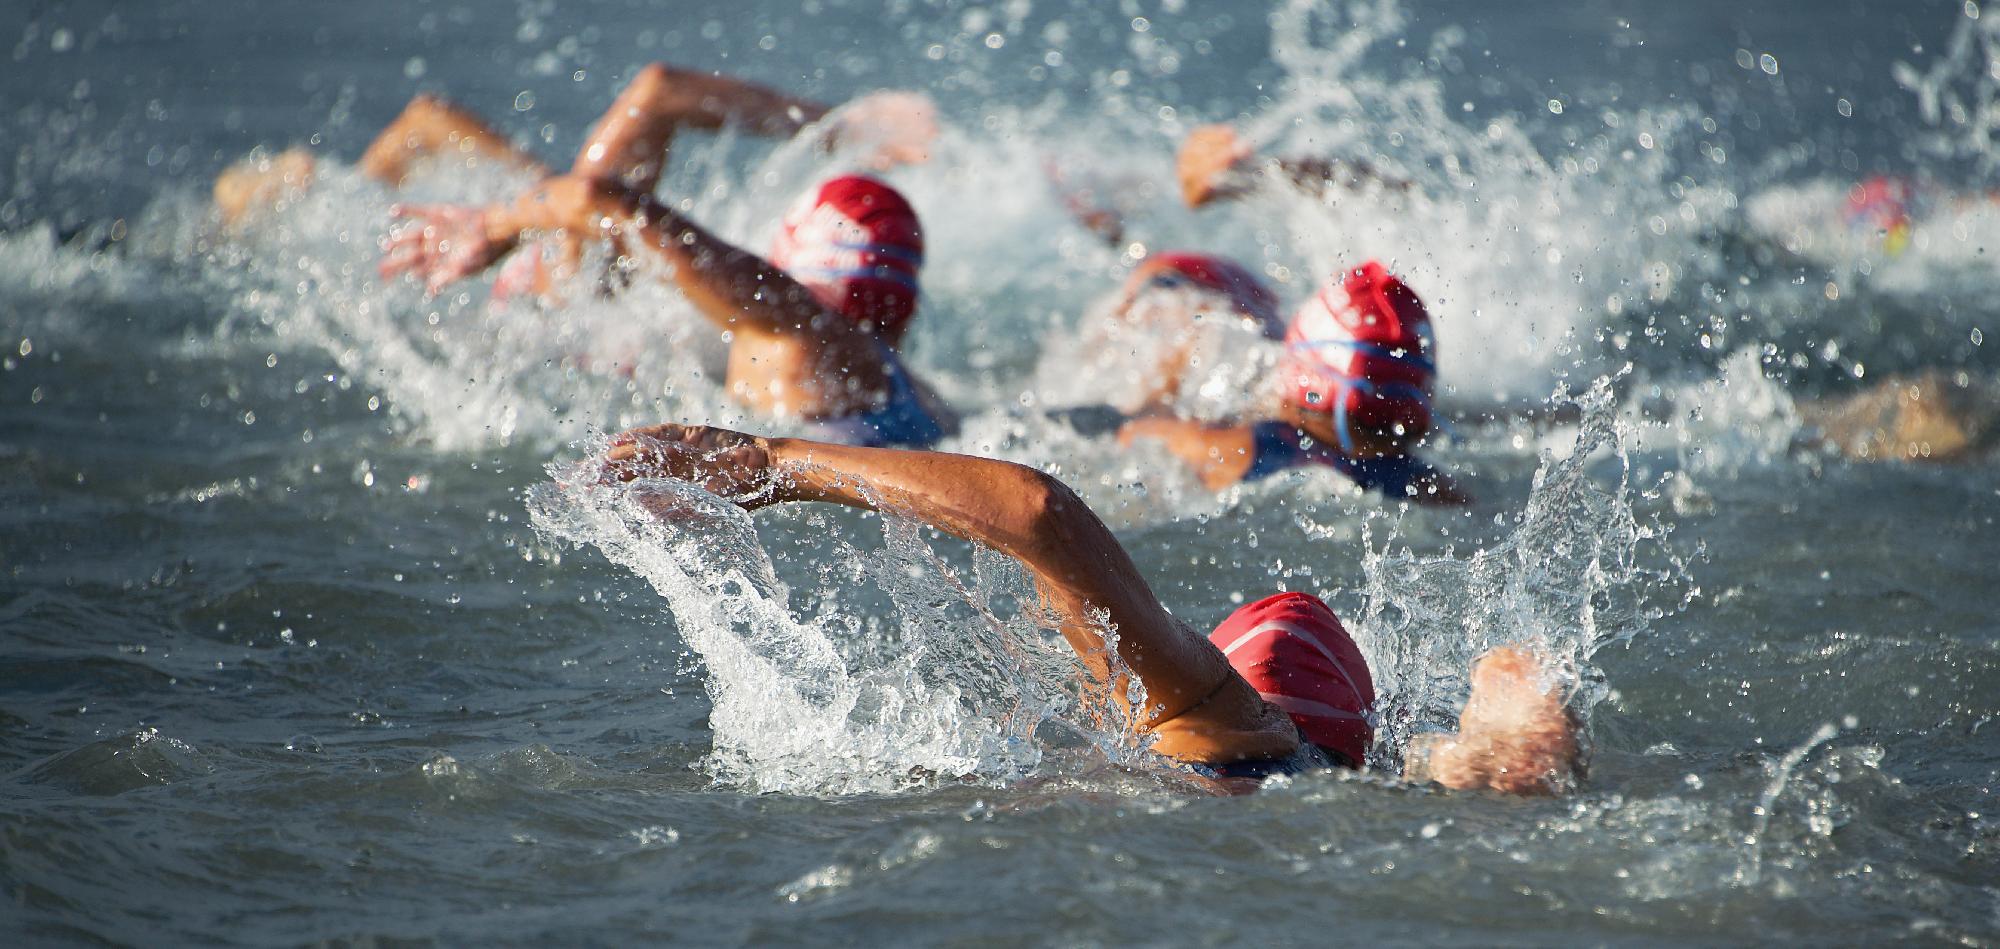 A háború miatt nem Eilatban lesz a nyíltvízi úszó vk utolsó versenye